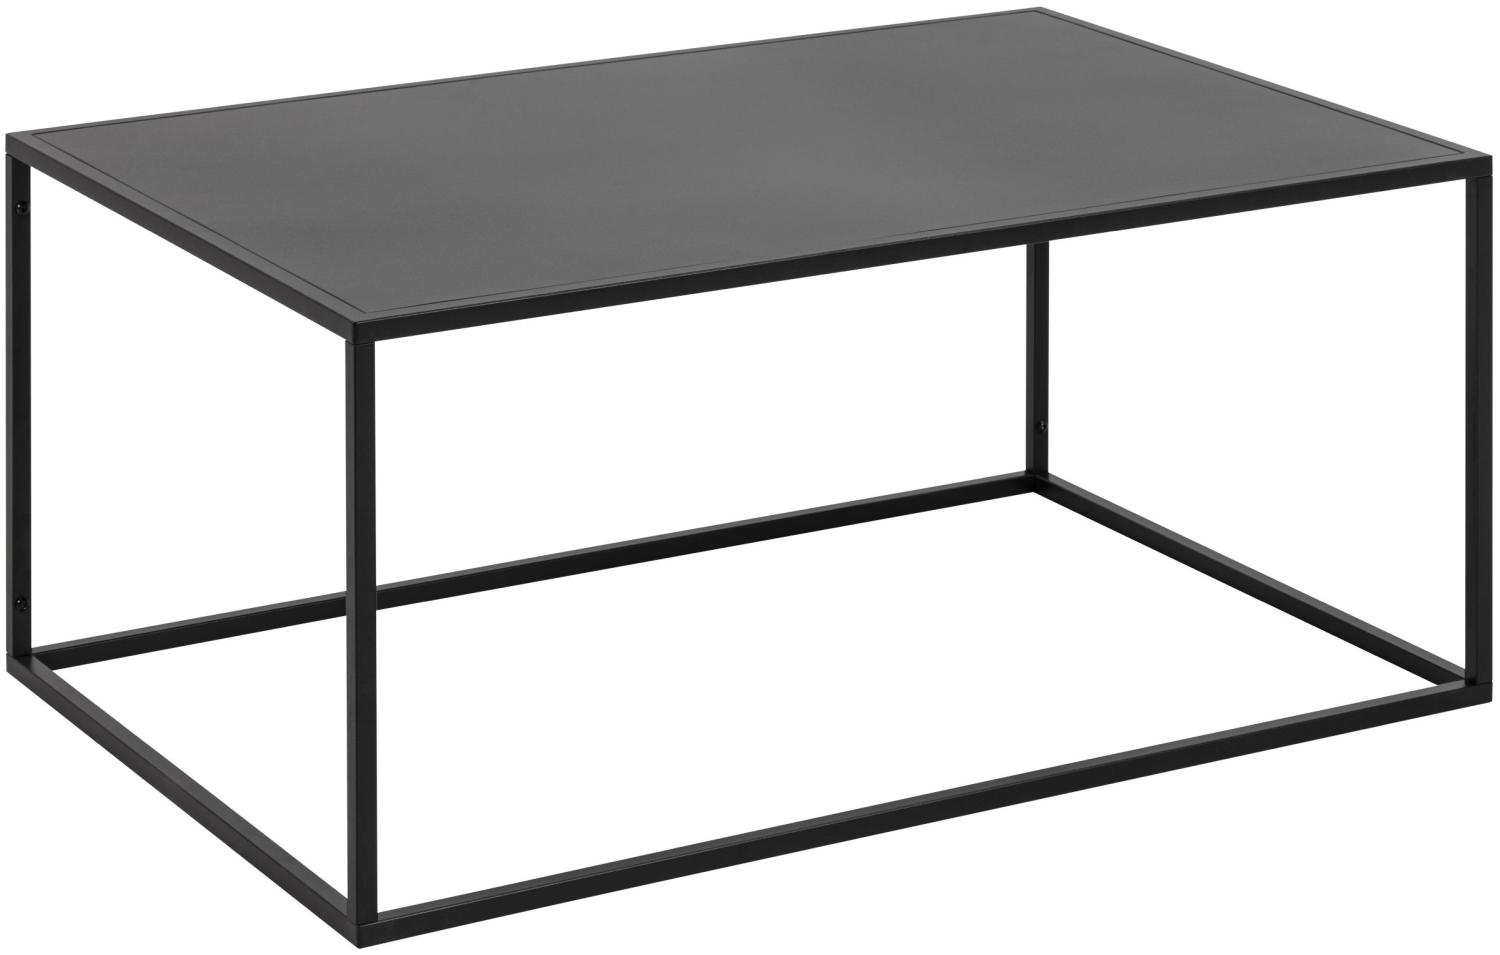 Newton Couchtisch schwarz Beistelltisch Sofatisch Wohnzimmer Lounge Tisch Bild 1